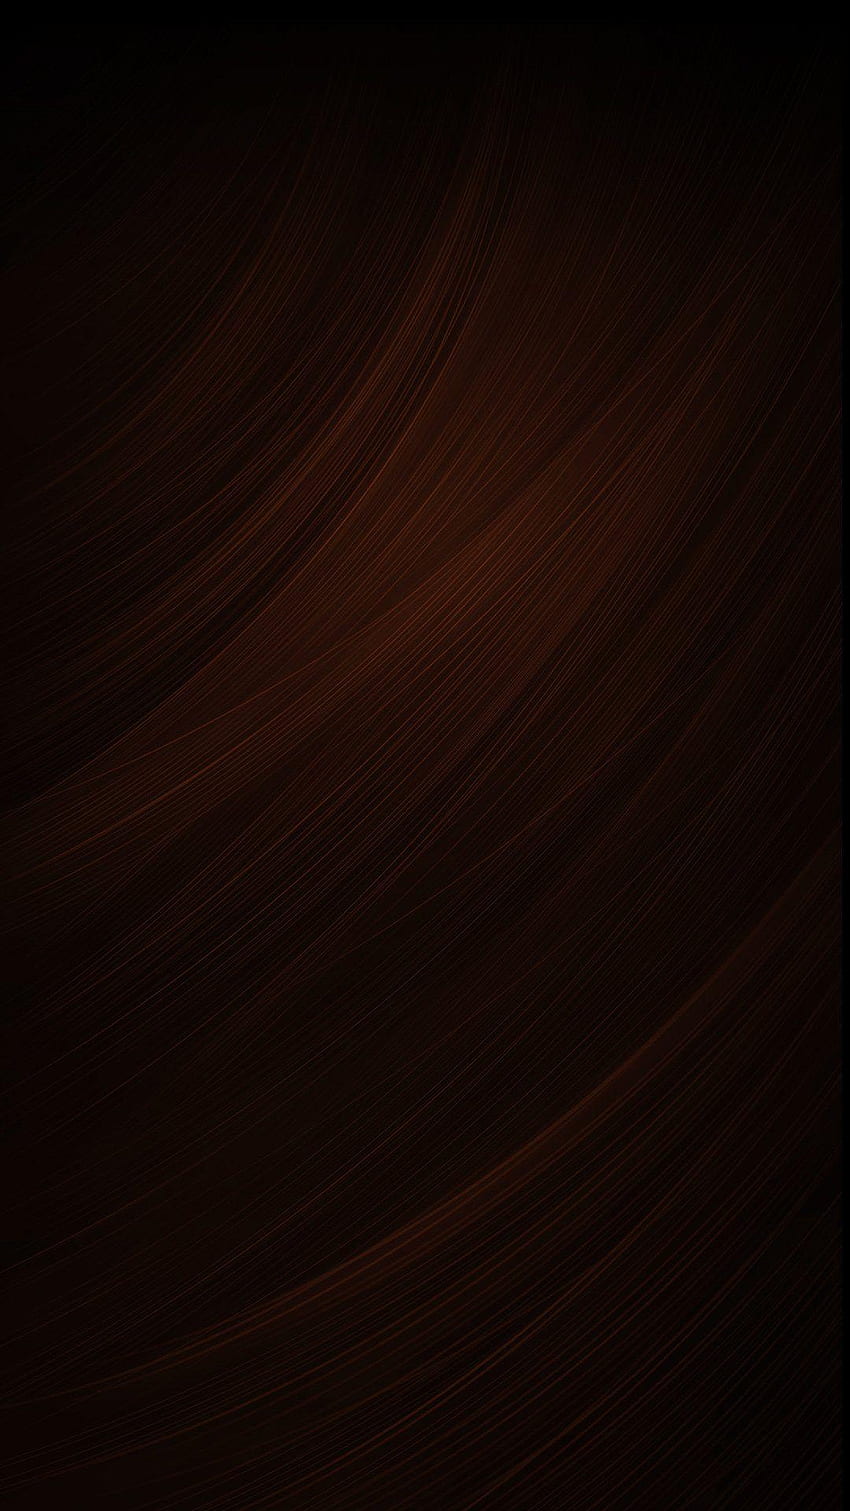 Marrón oscuro, marrón oscuro degradado fondo de pantalla del teléfono